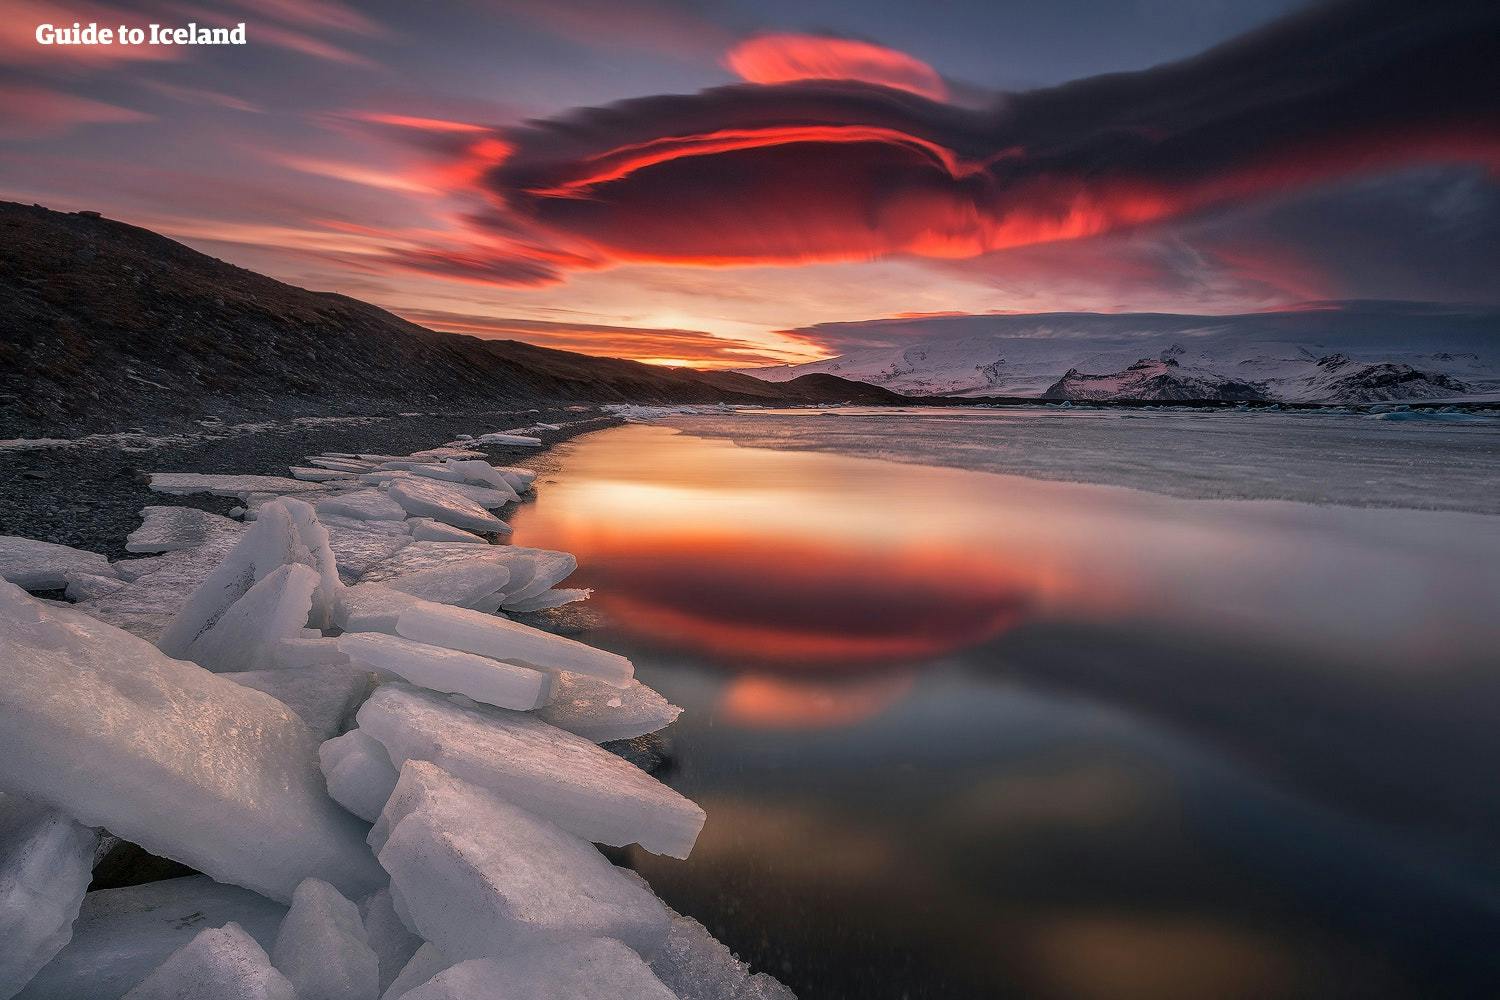 Besichtige die Gletscherlagune Jökulsarlon während der kalten Jahreszeit und bewundere ihre unbeschreibliche Schönheit im faszinierenden Licht des Winters.